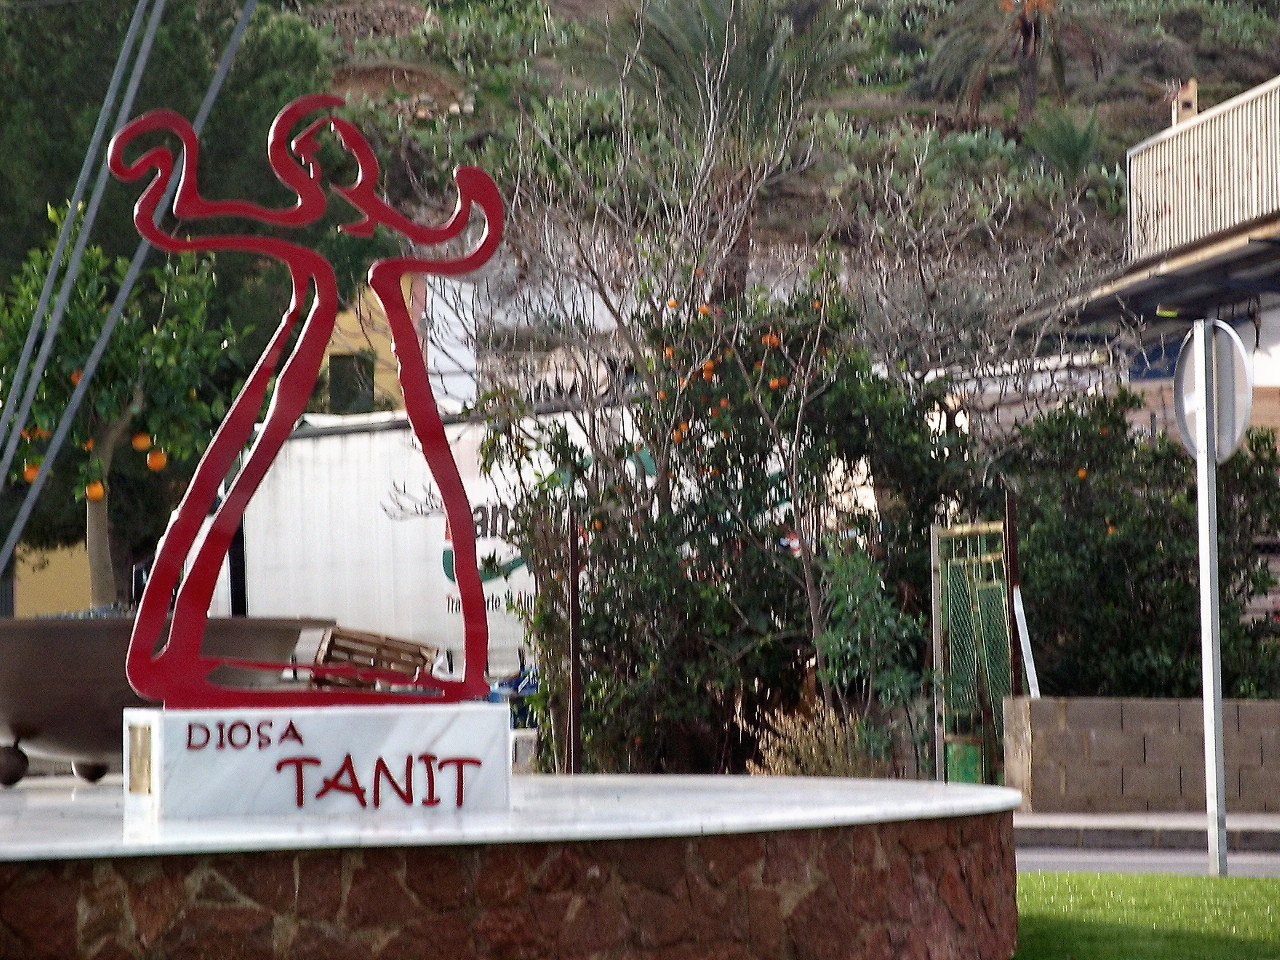 Monumento a la diosa fenicio-púnica Tanit en la rotonda de entrada de El Chuche. Fuente: Blog 